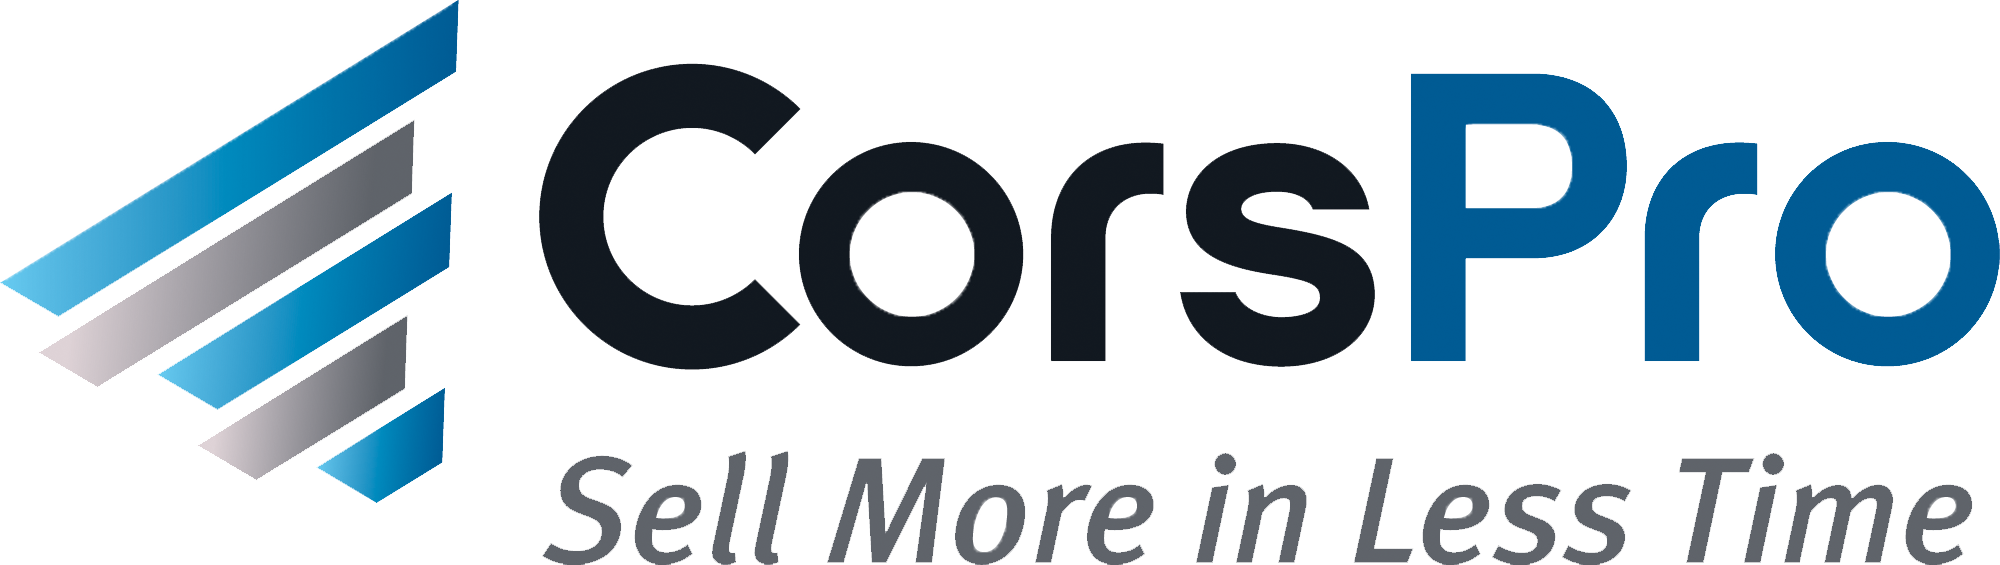 CorsPro - Logo transparent.png